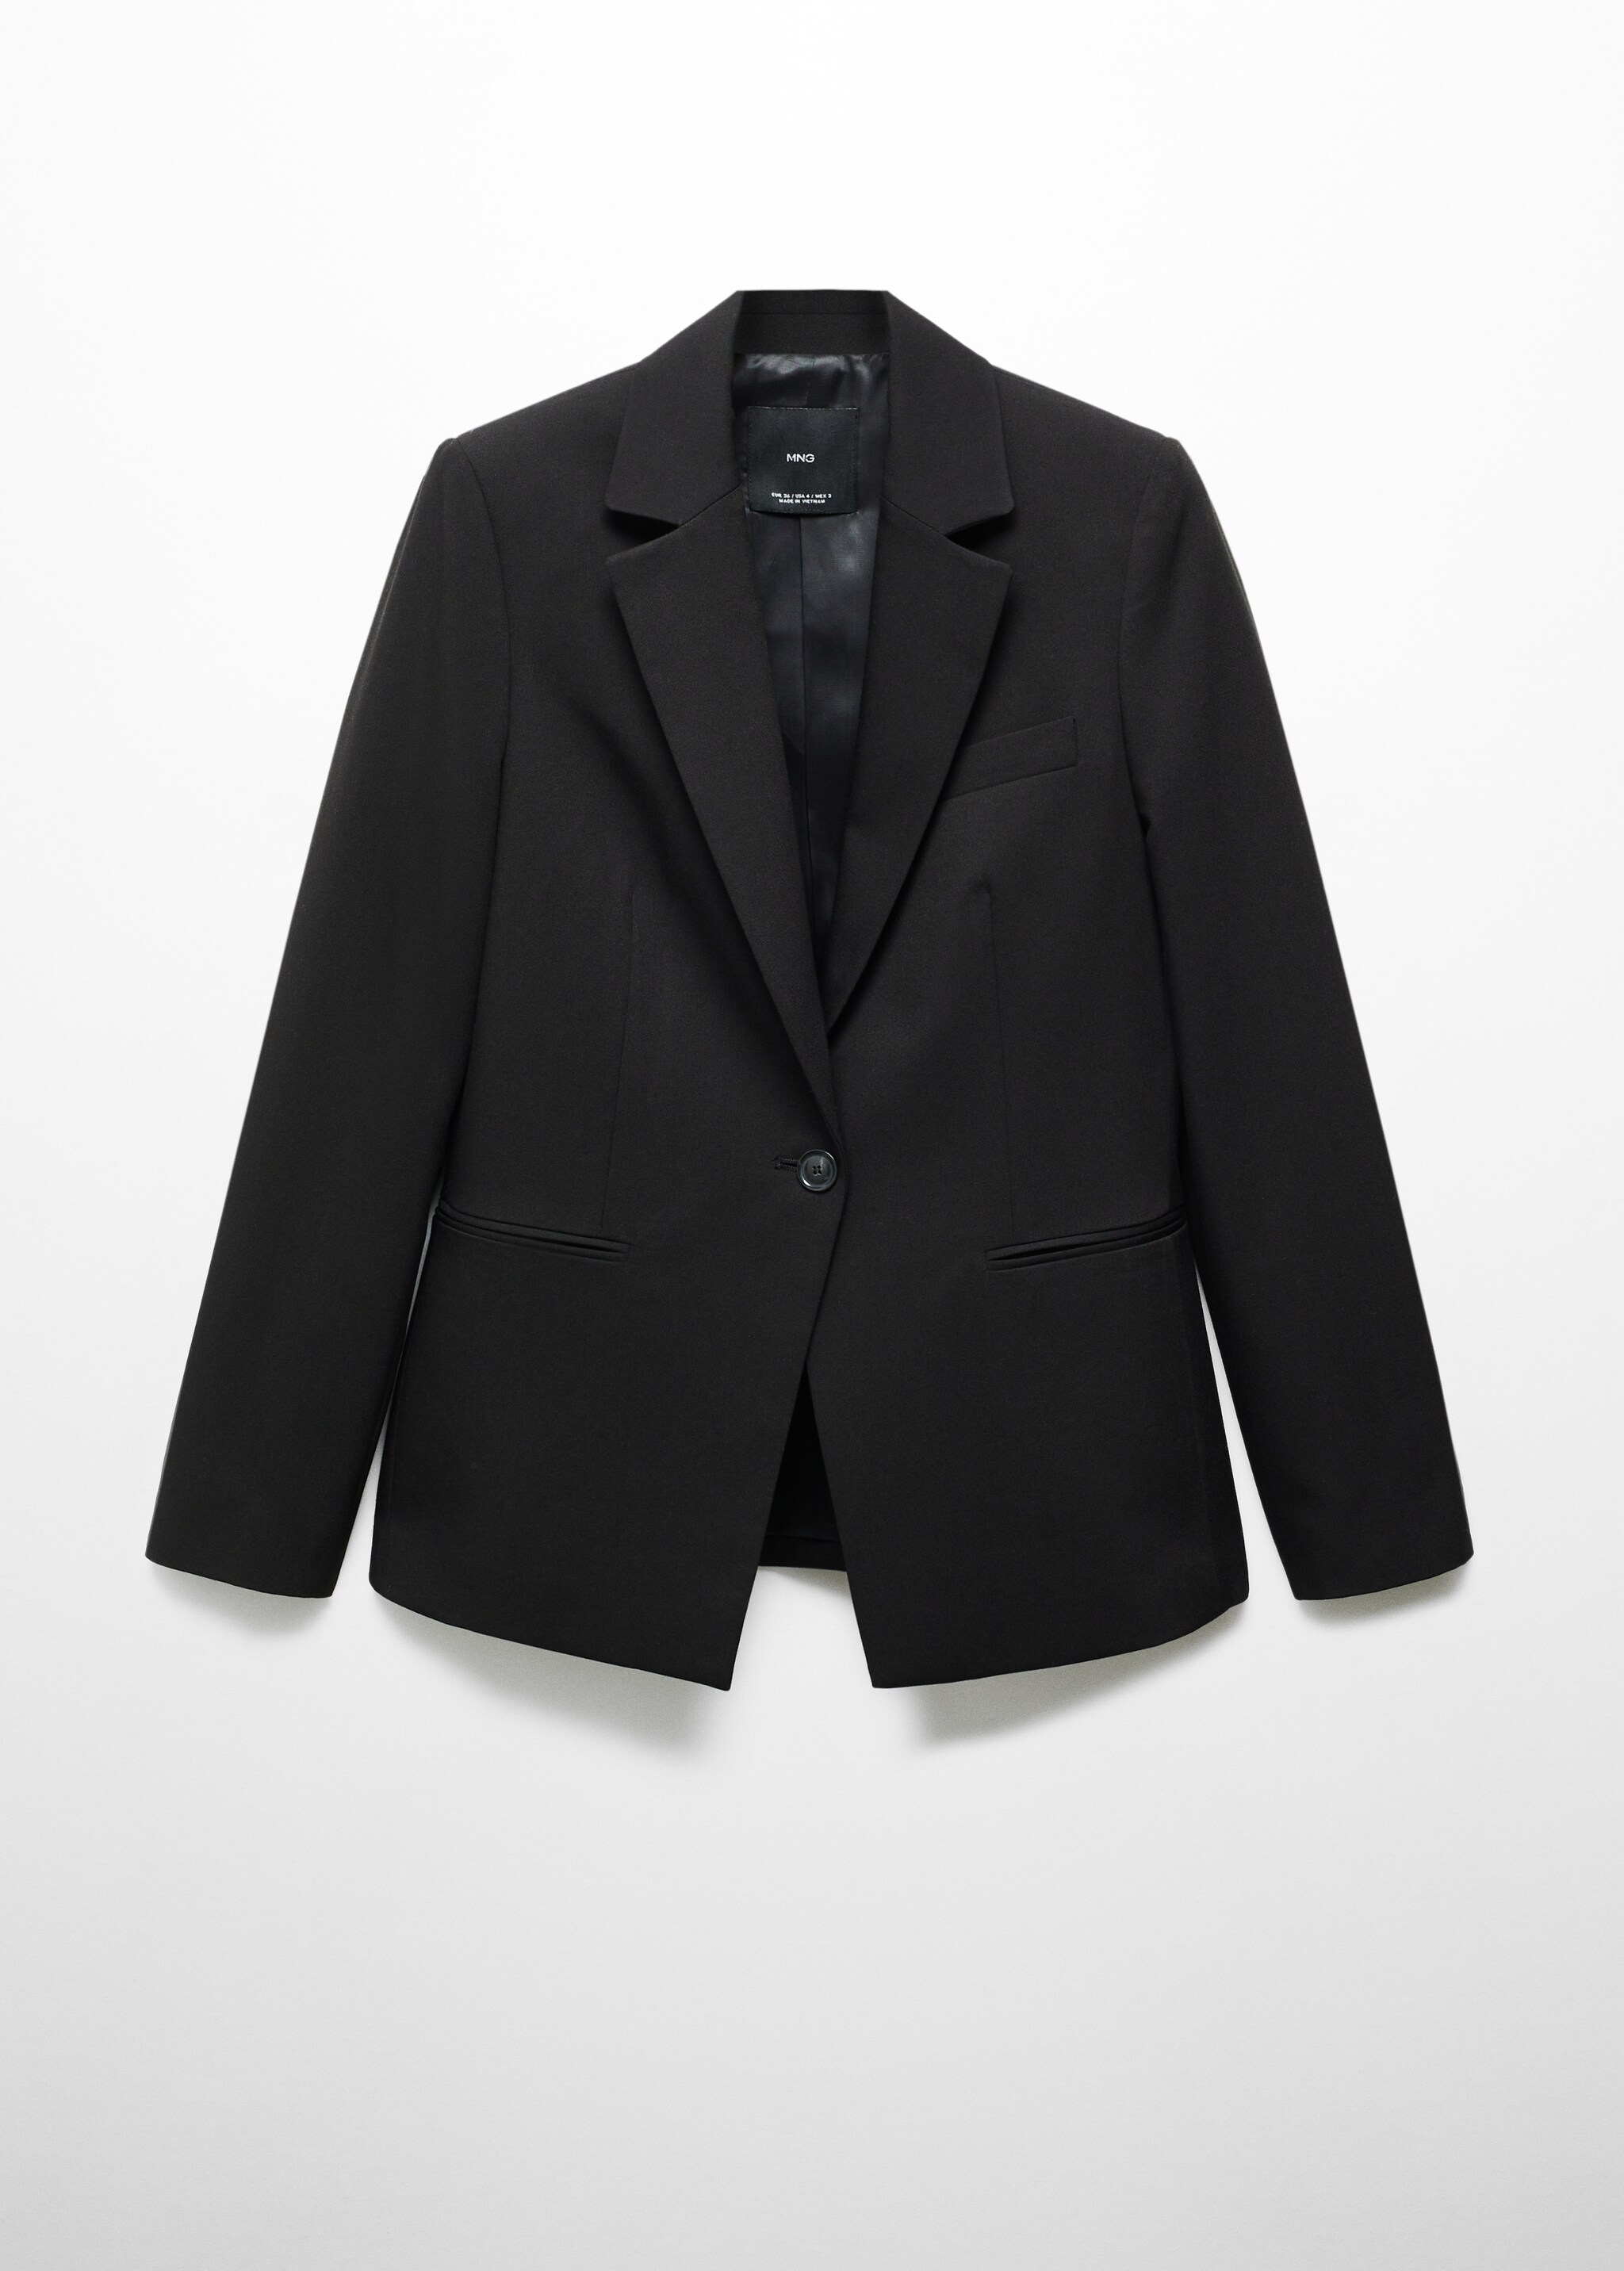 Σακάκι κοστουμιού στενό - Προϊόν χωρίς μοντέλο